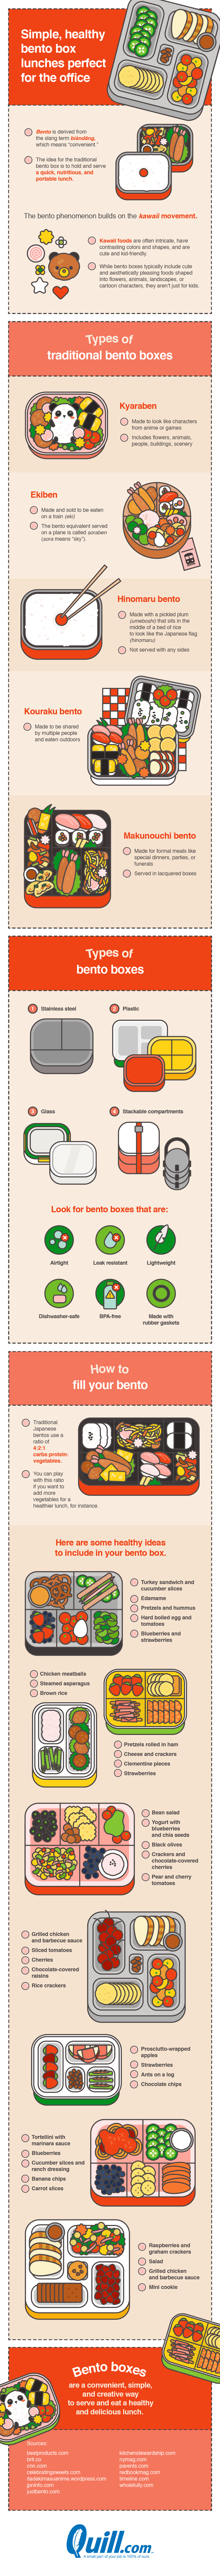 Bento Box Infographic